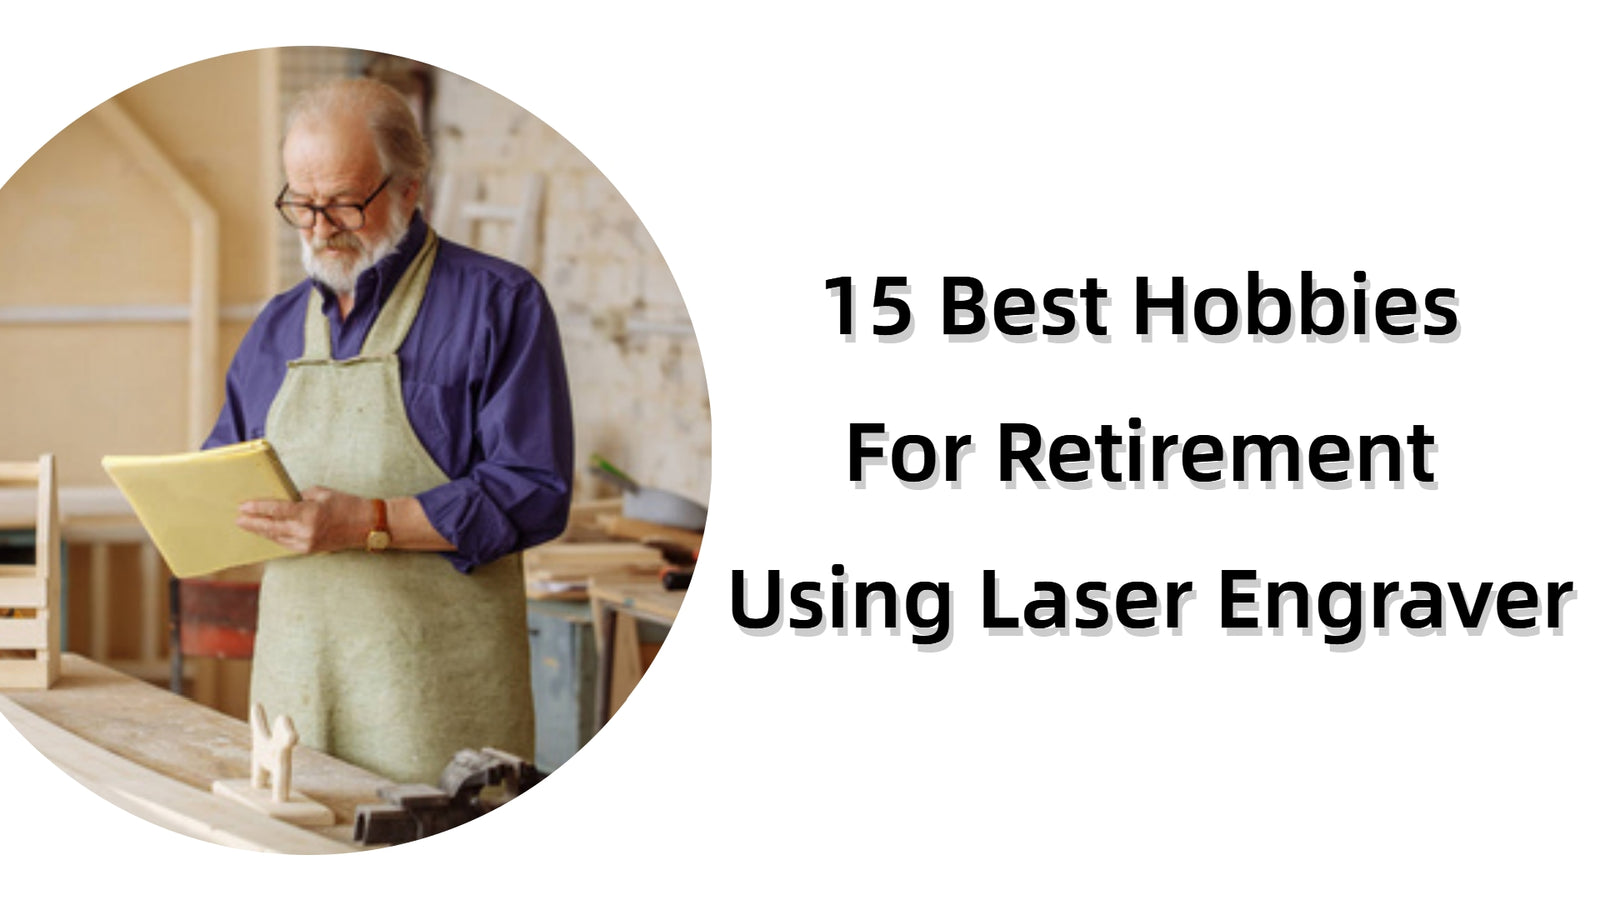 15 Best Hobbies For Retirement Using Laser Engraver